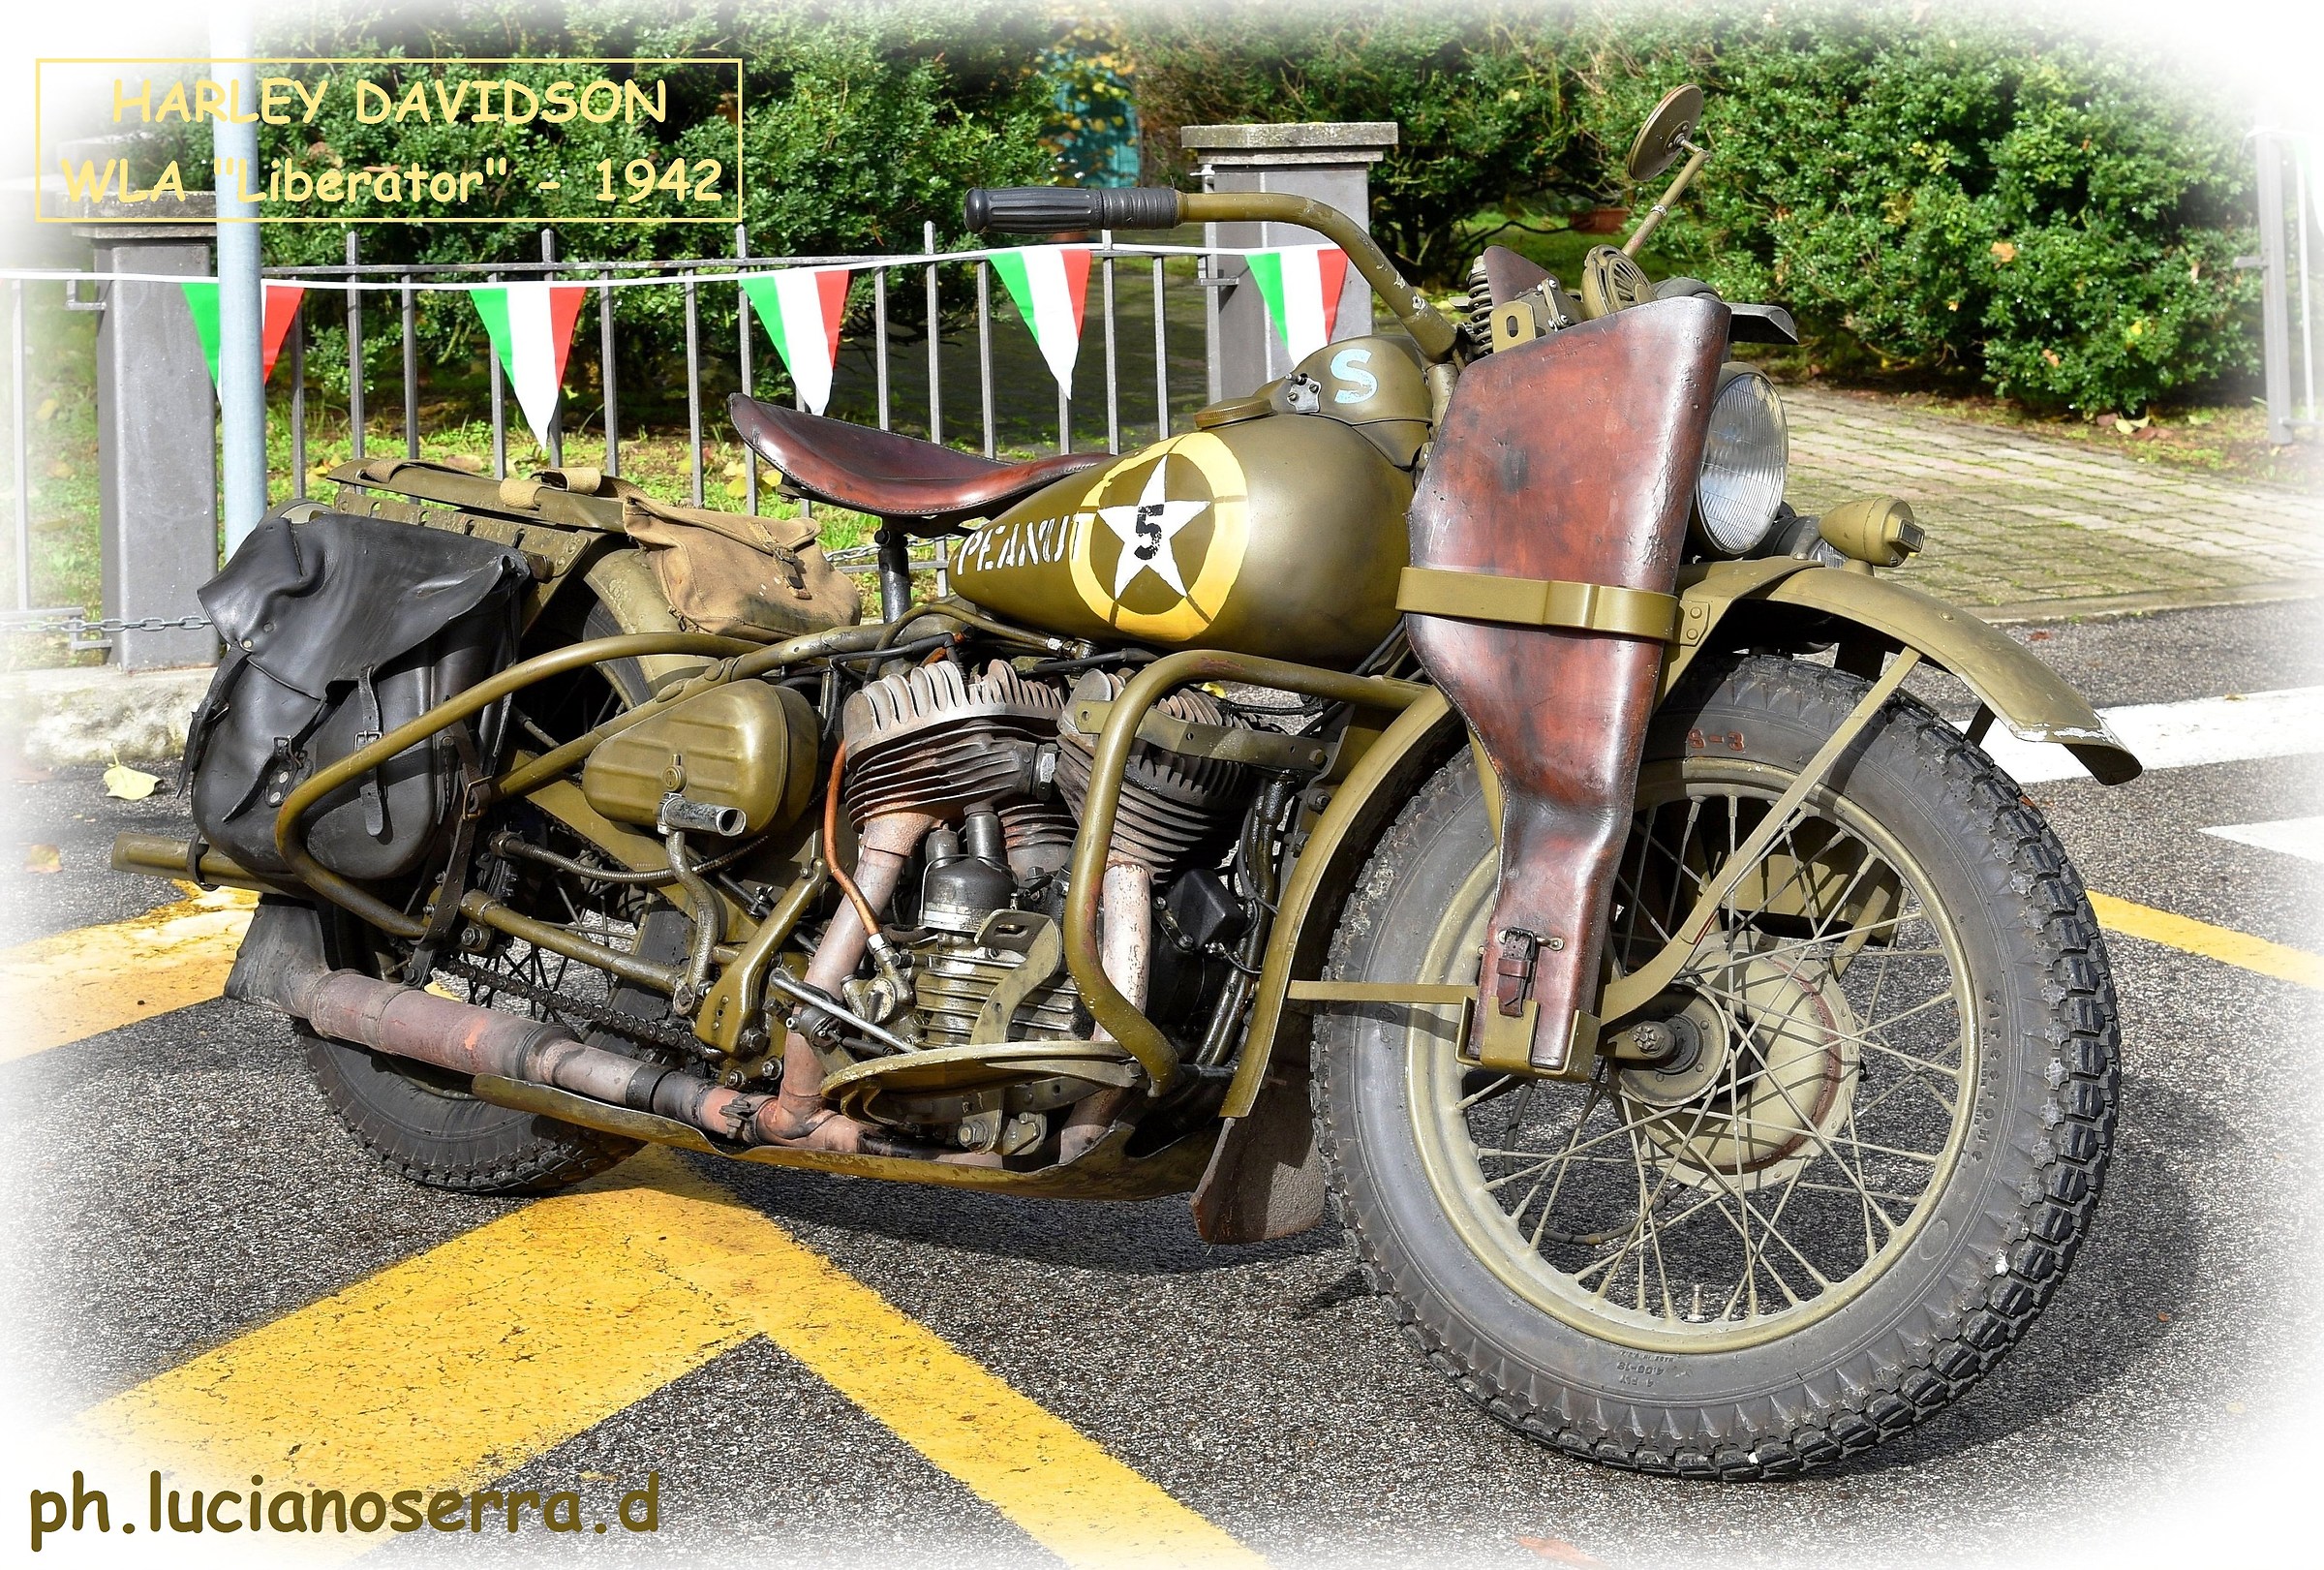 Harley Davidson WLA "Liberator" - 1942...